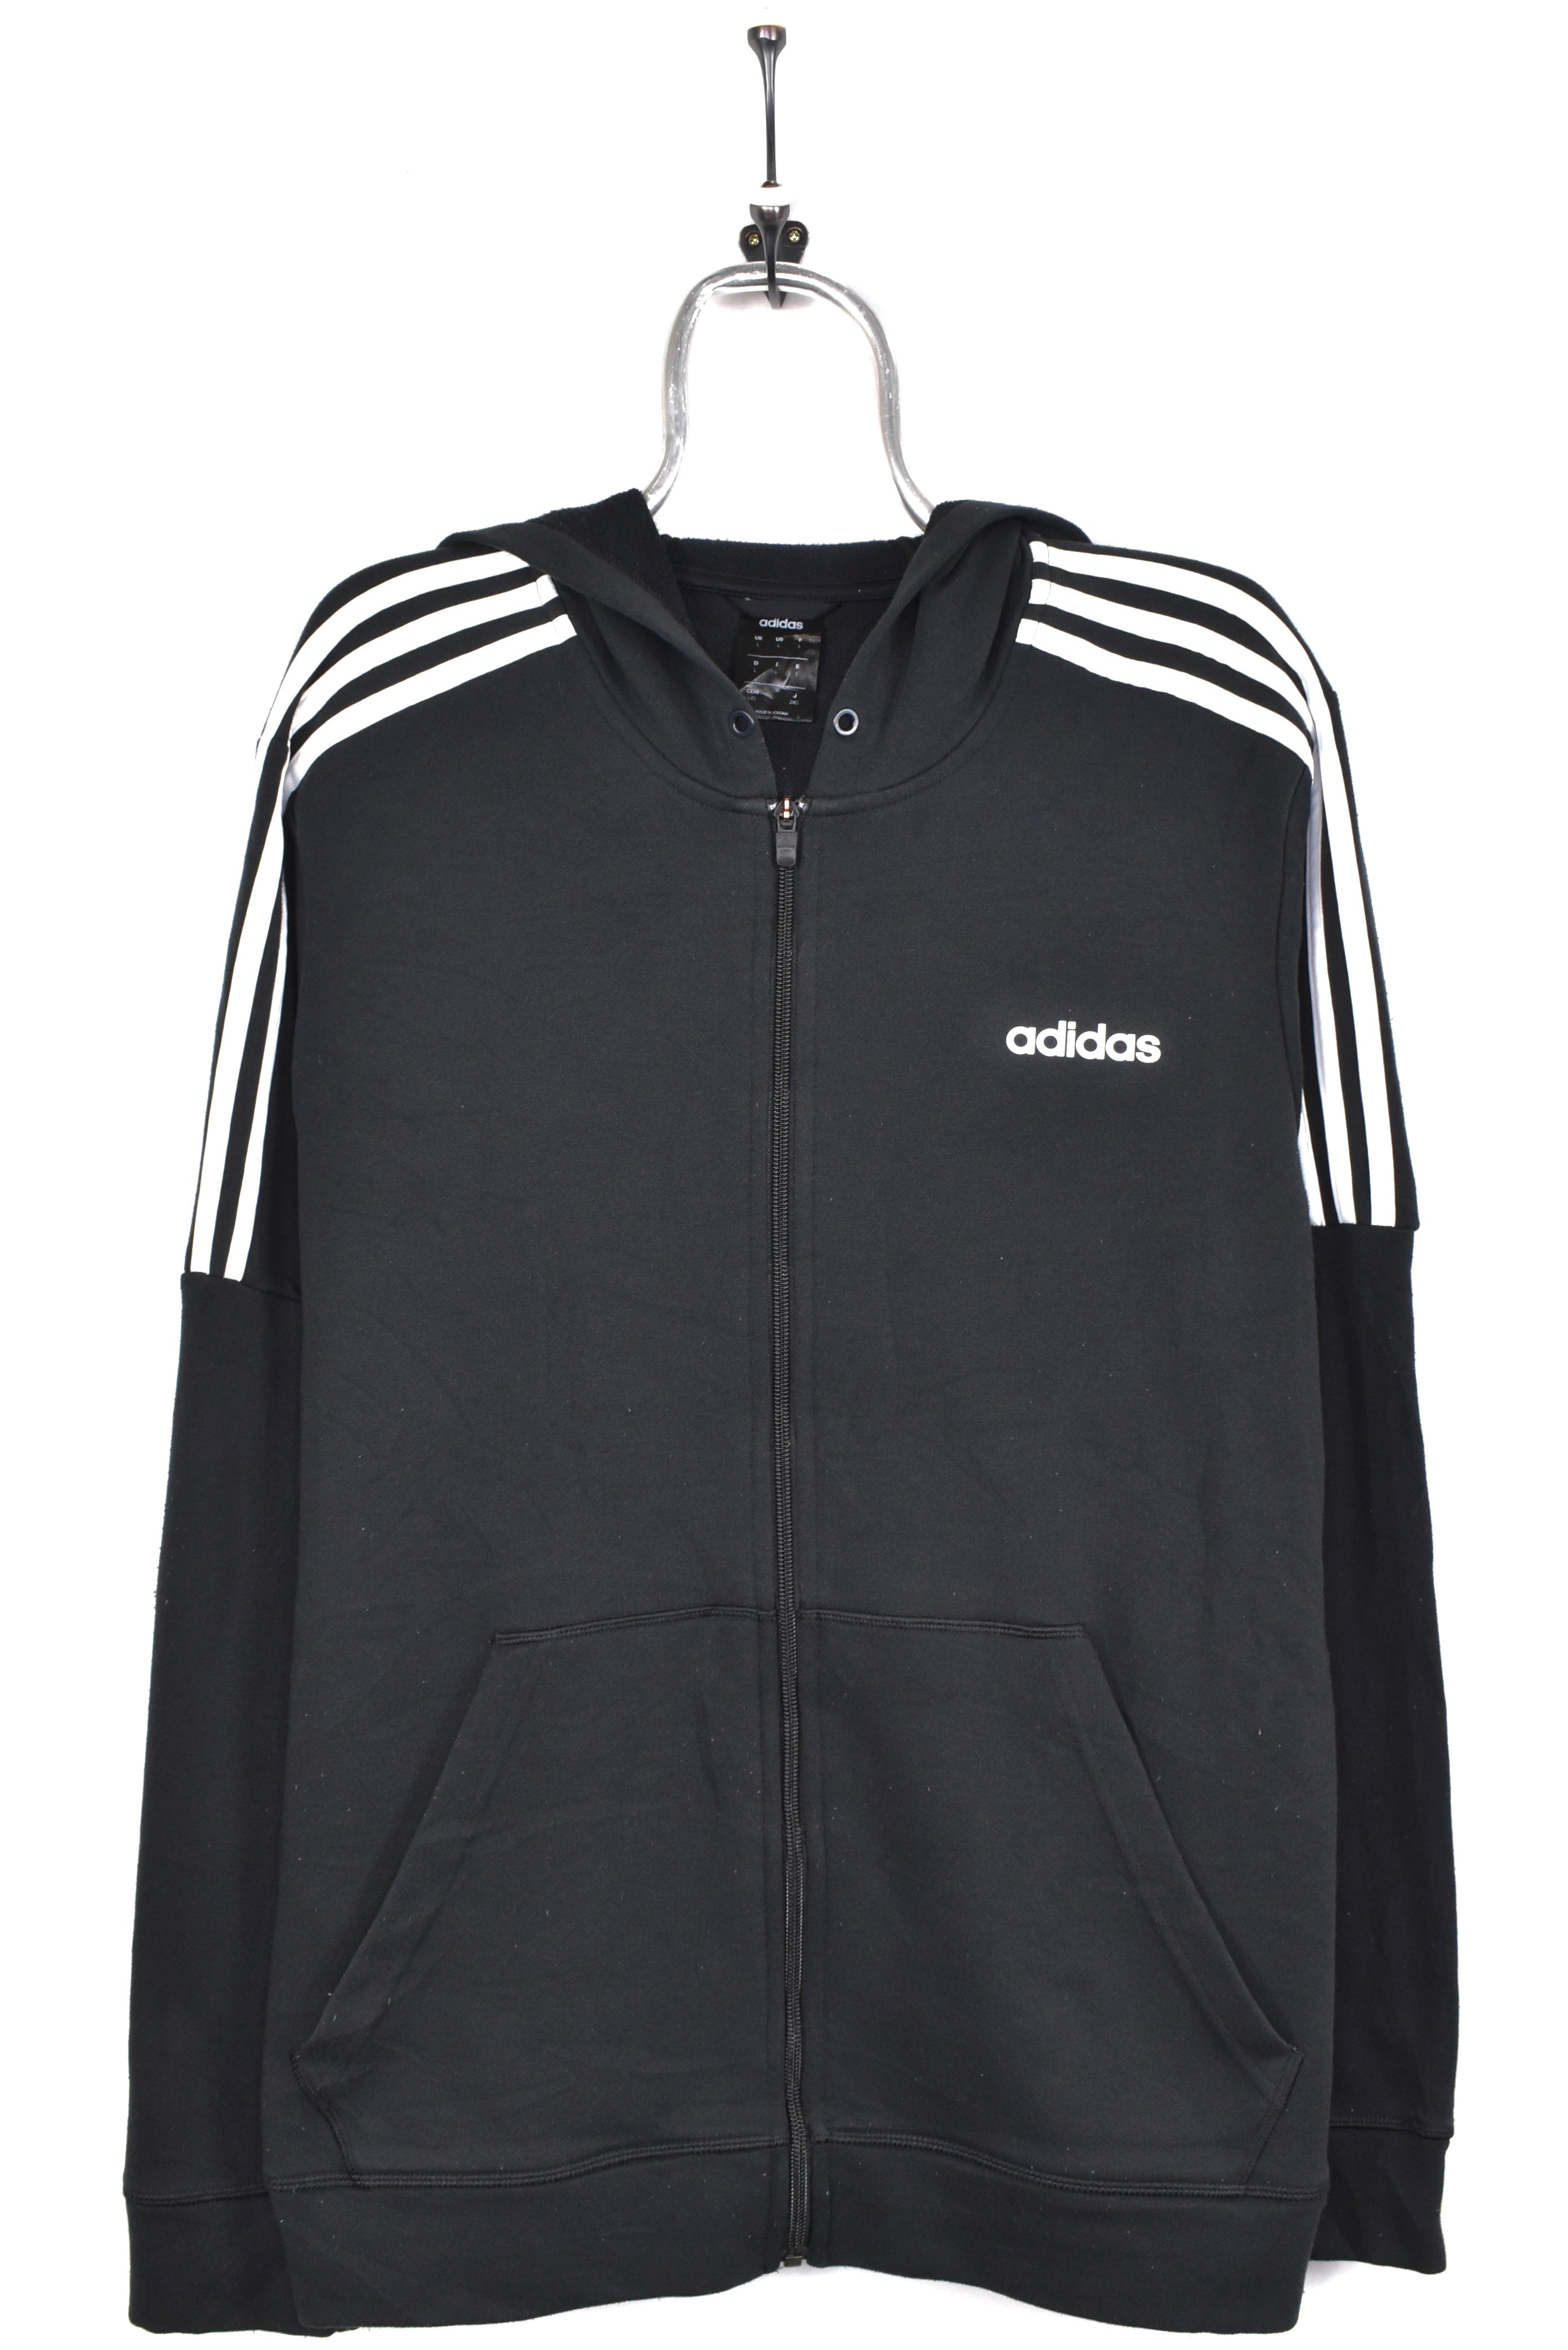 Vintage Adidas hoodie, black graphic sweatshirt - AU Medium ADIDAS